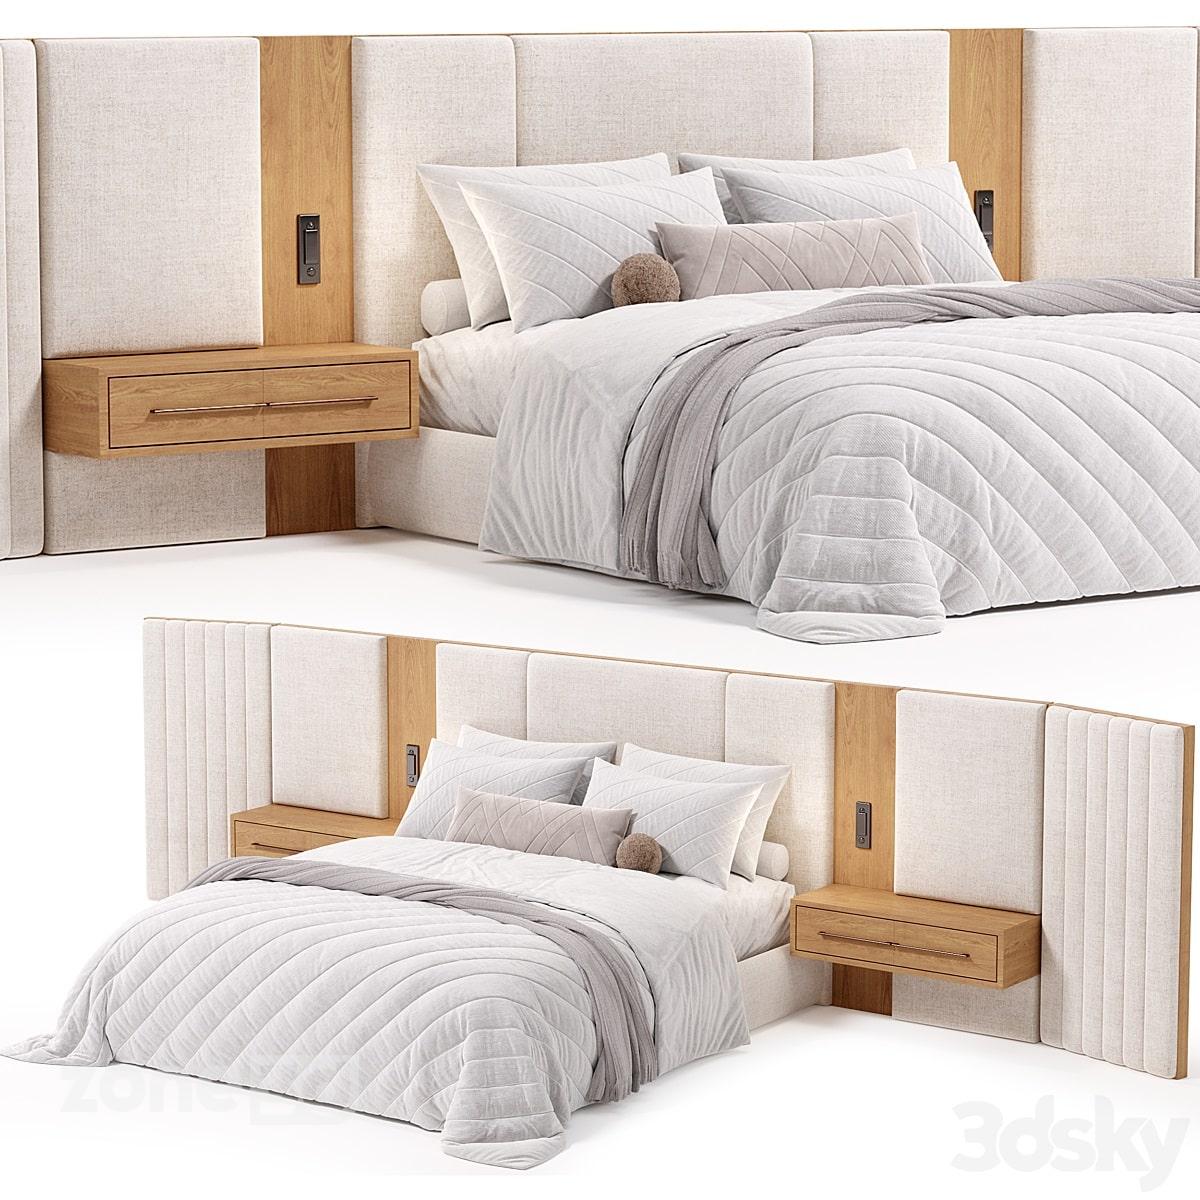 آبجکت تخت خواب دو نفره راحتی با تاج تخت پارچه ای و چوبی به همراه میز پاتختی BEACON